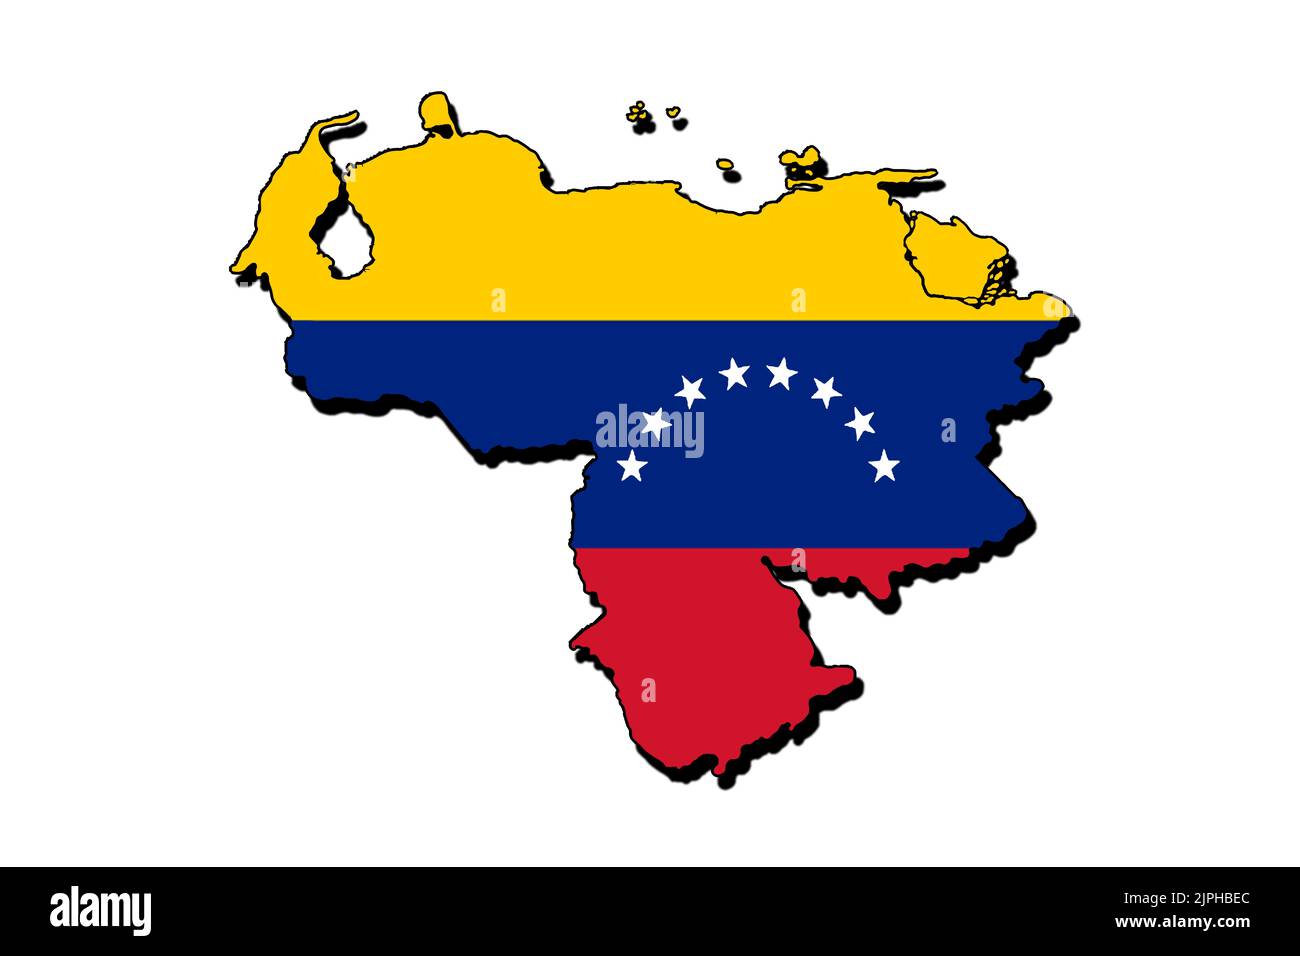 Silhouette de la carte du Venezuela avec son drapeau Banque D'Images